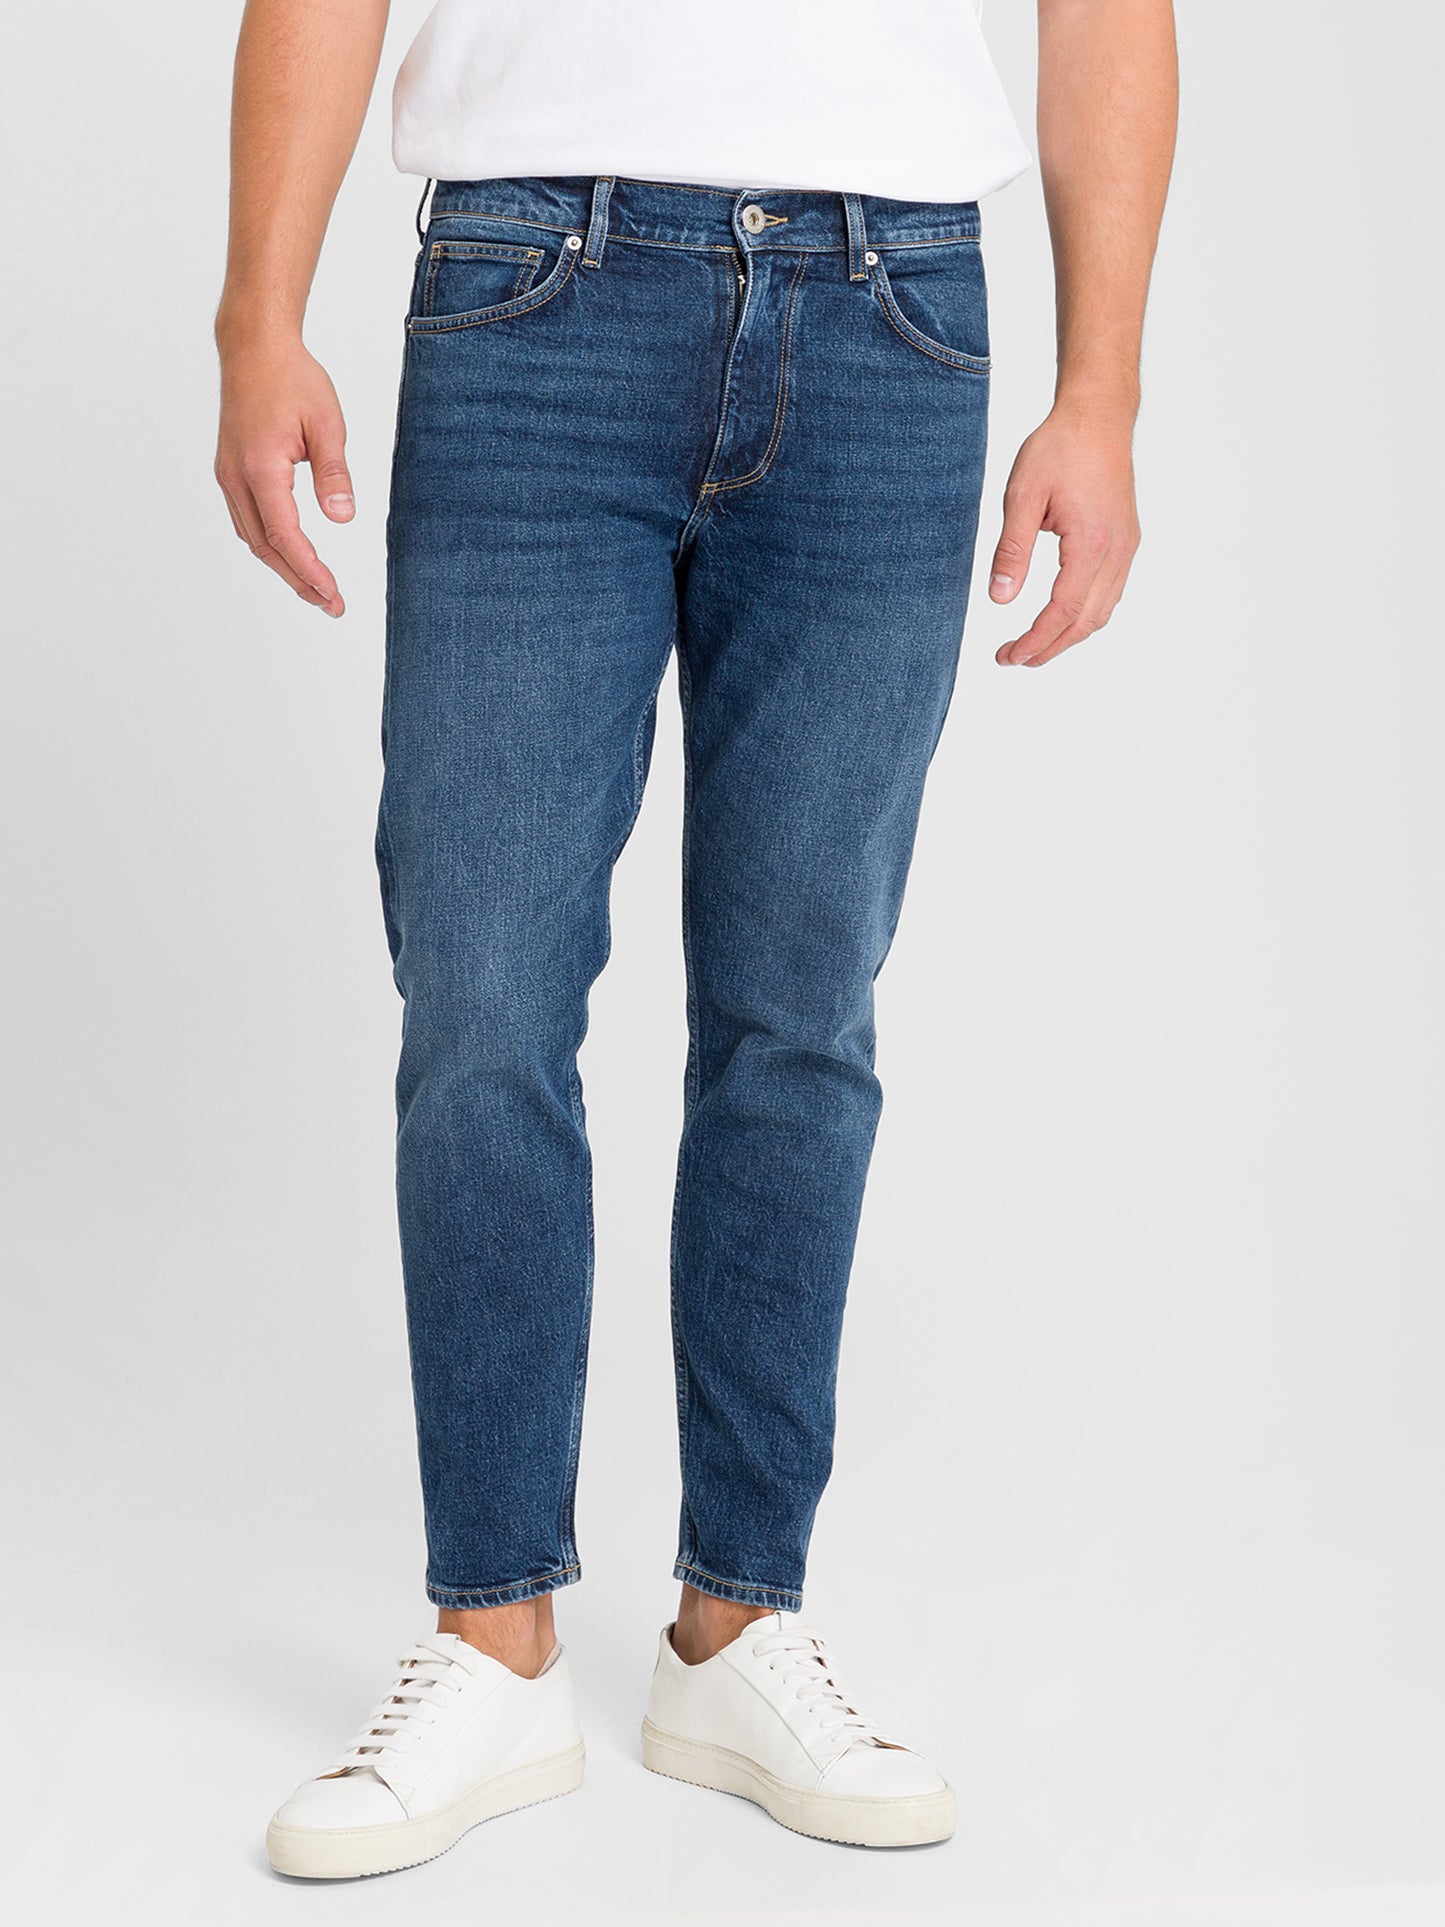 Finn men's jeans regular fit tapered leg dark blue